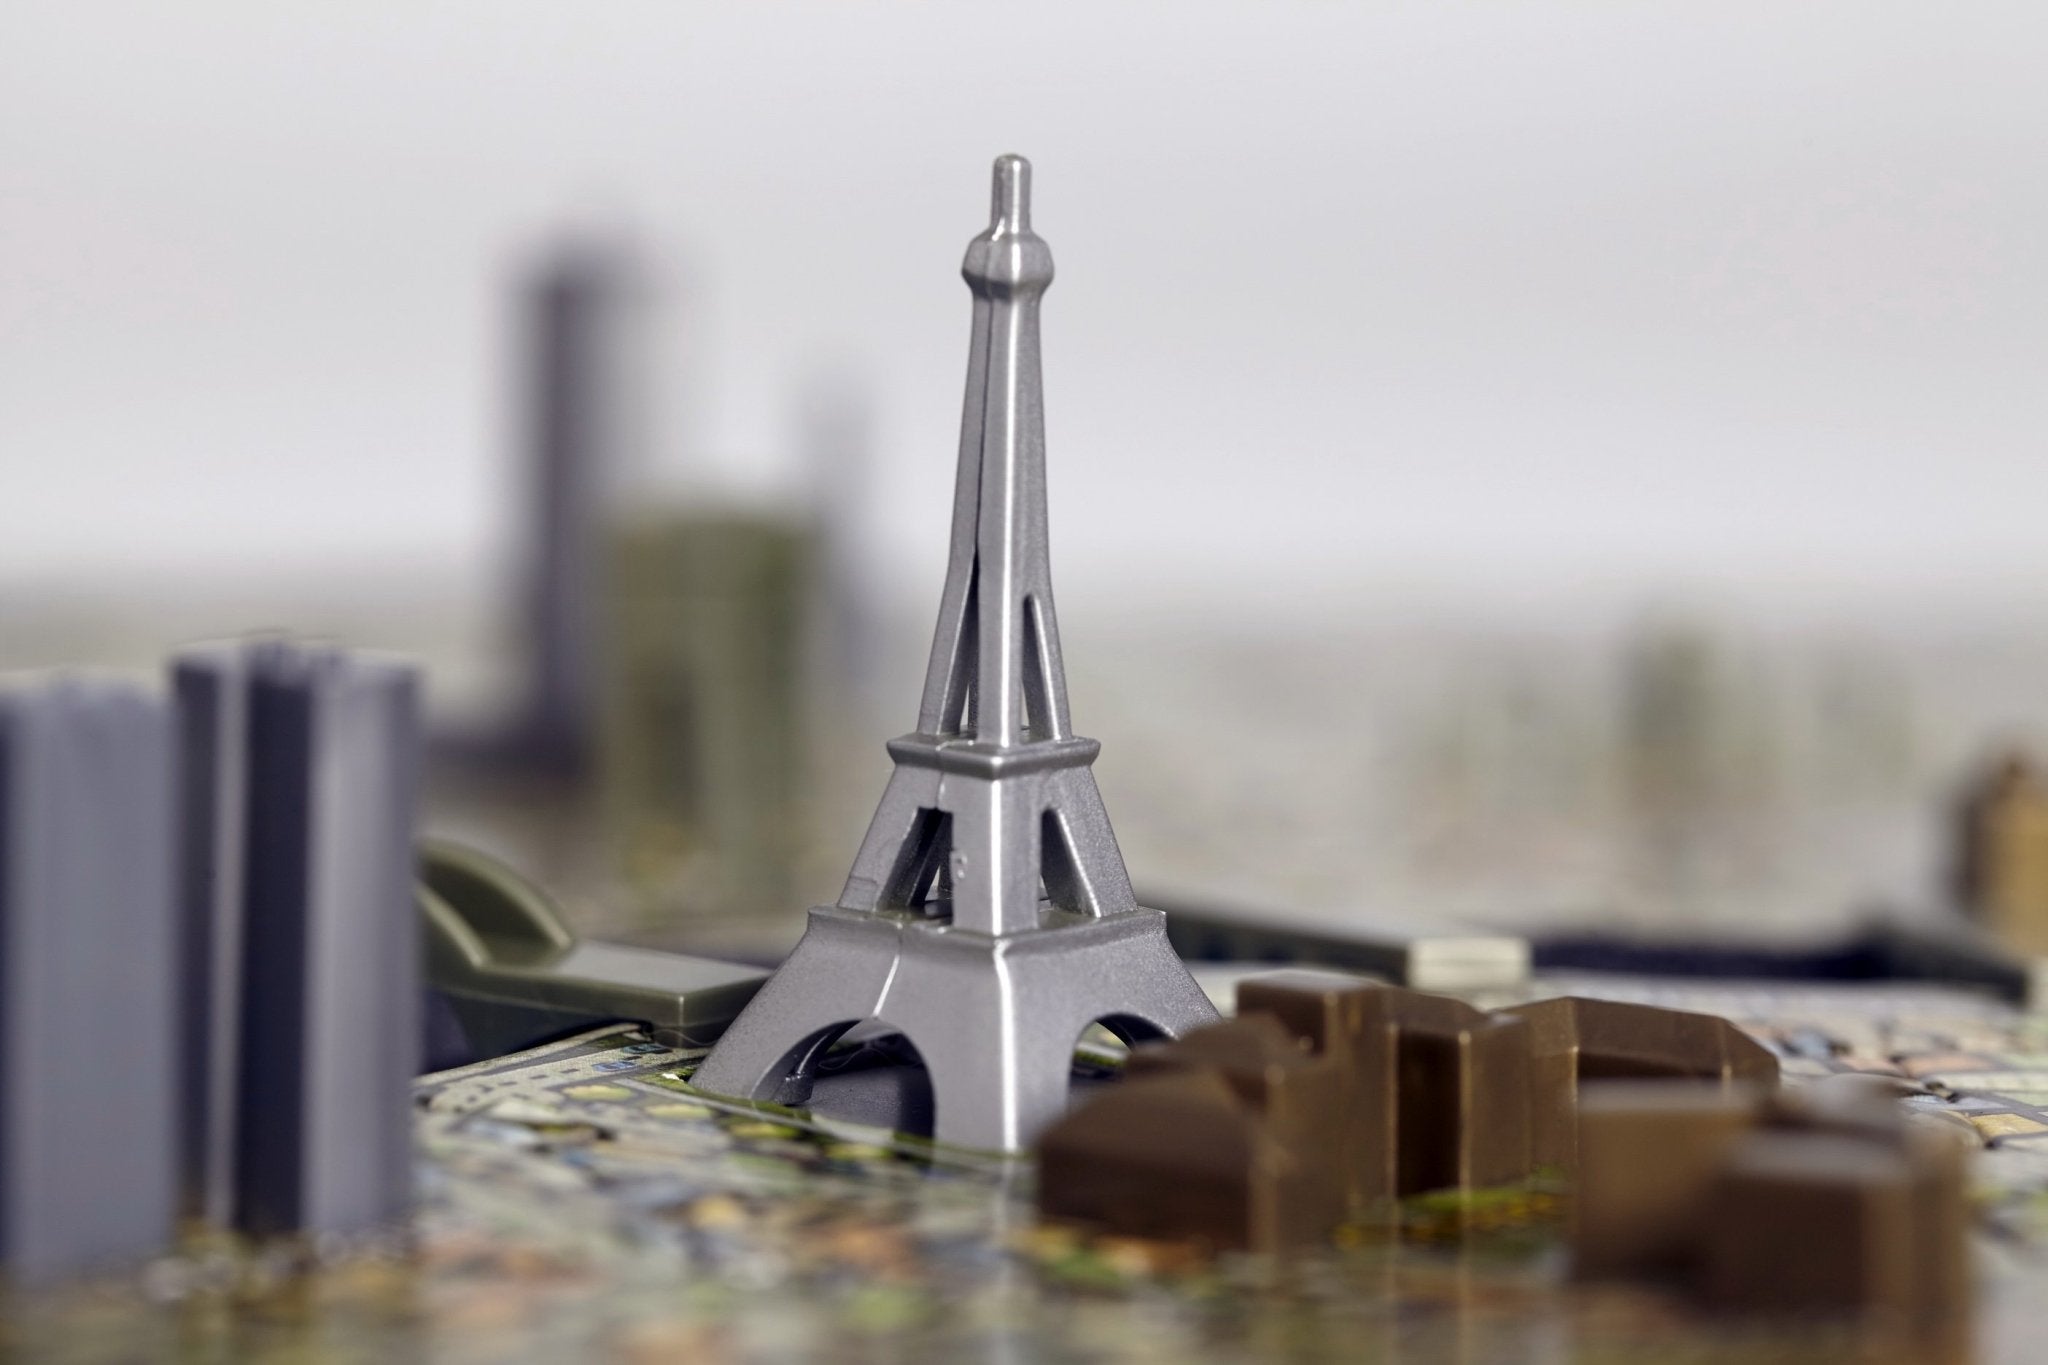 4D Cityscape Paris Time Puzzle - 4DPuzz - 4DPuzz
